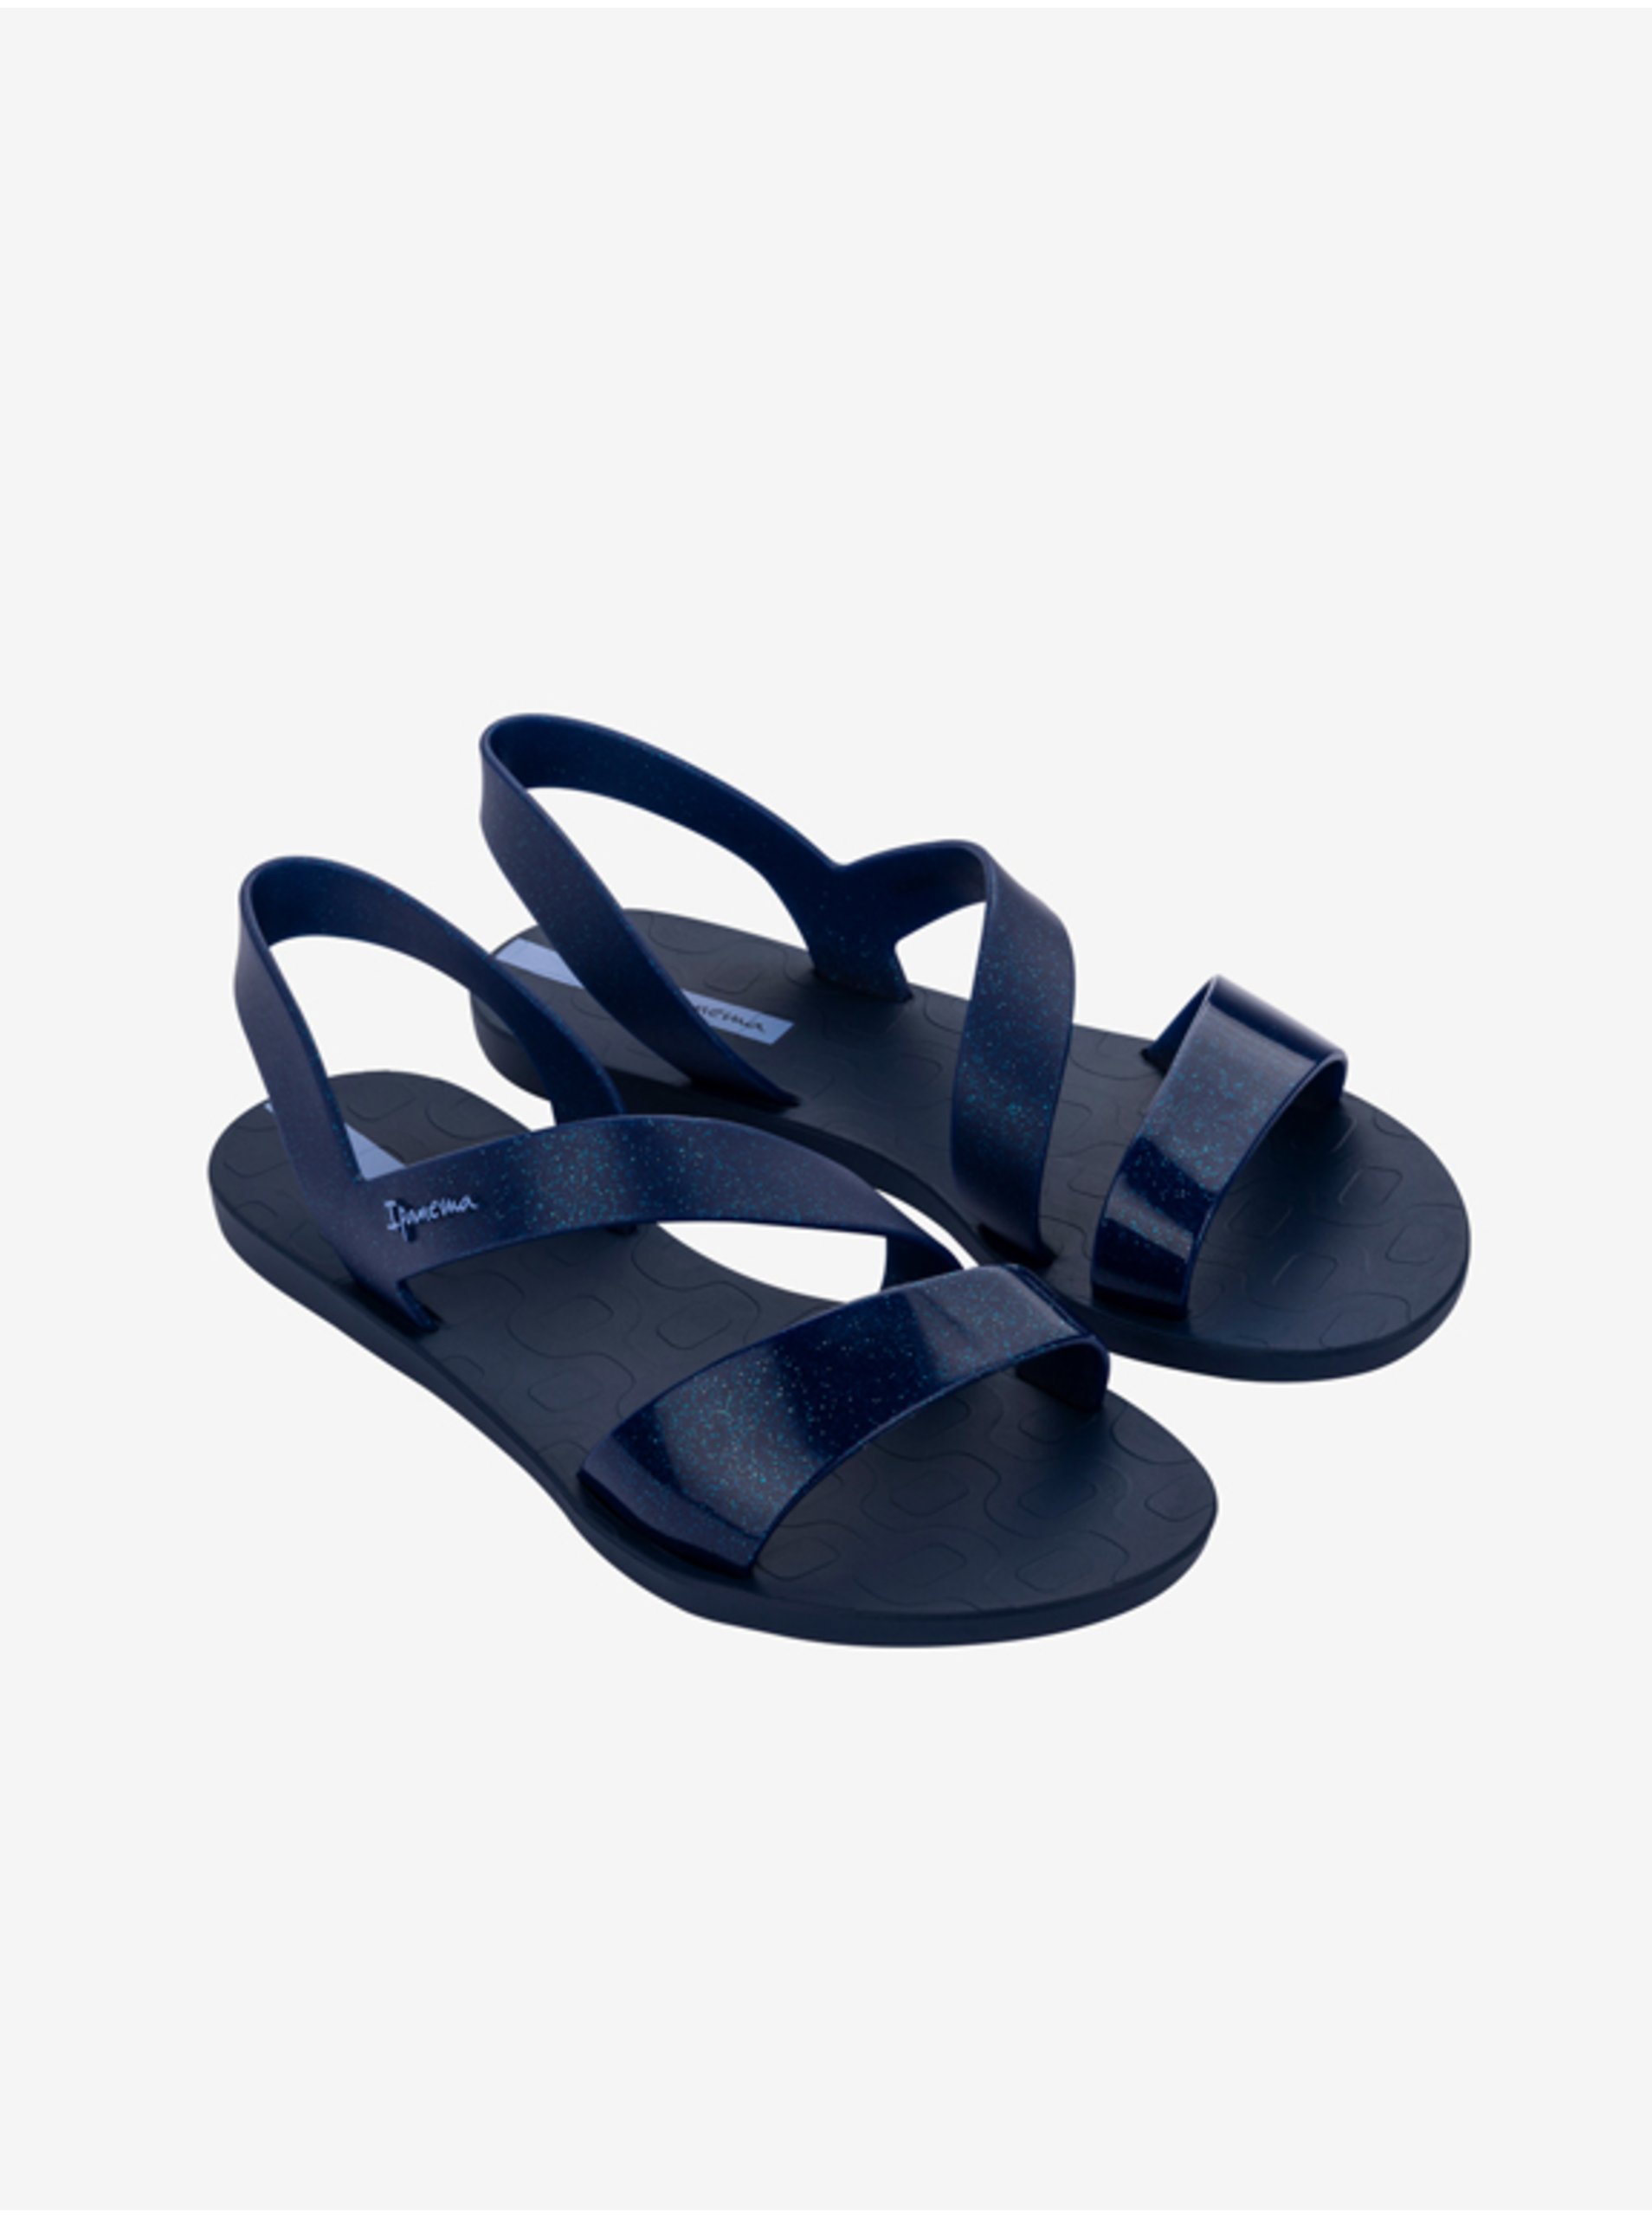 E-shop Sandále pre ženy Ipanema - tmavomodrá